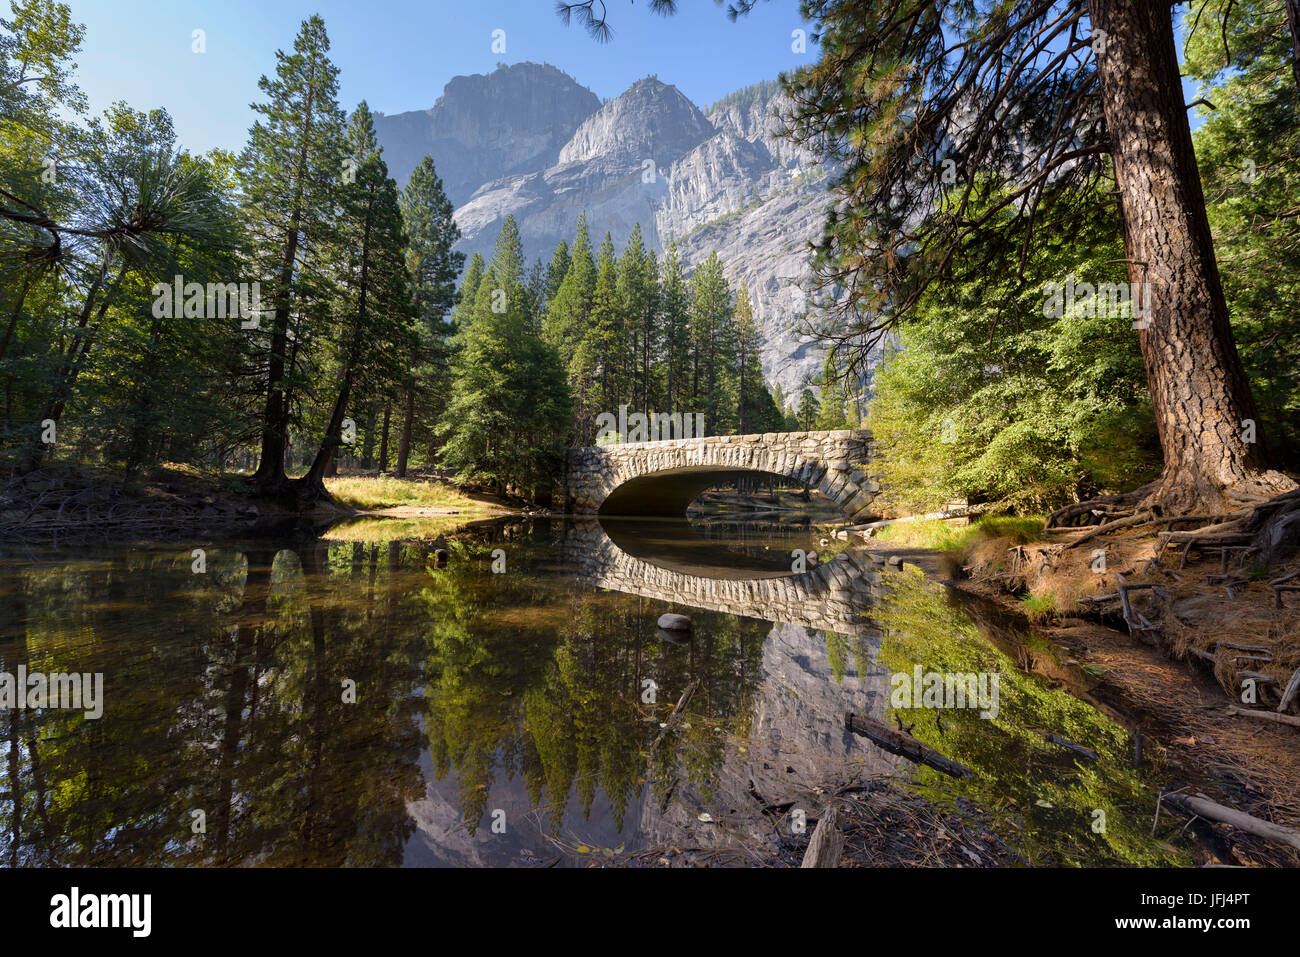 Vista en el valle de Yosemite, California, Estados Unidos, el parque nacional Yosemite Foto de stock